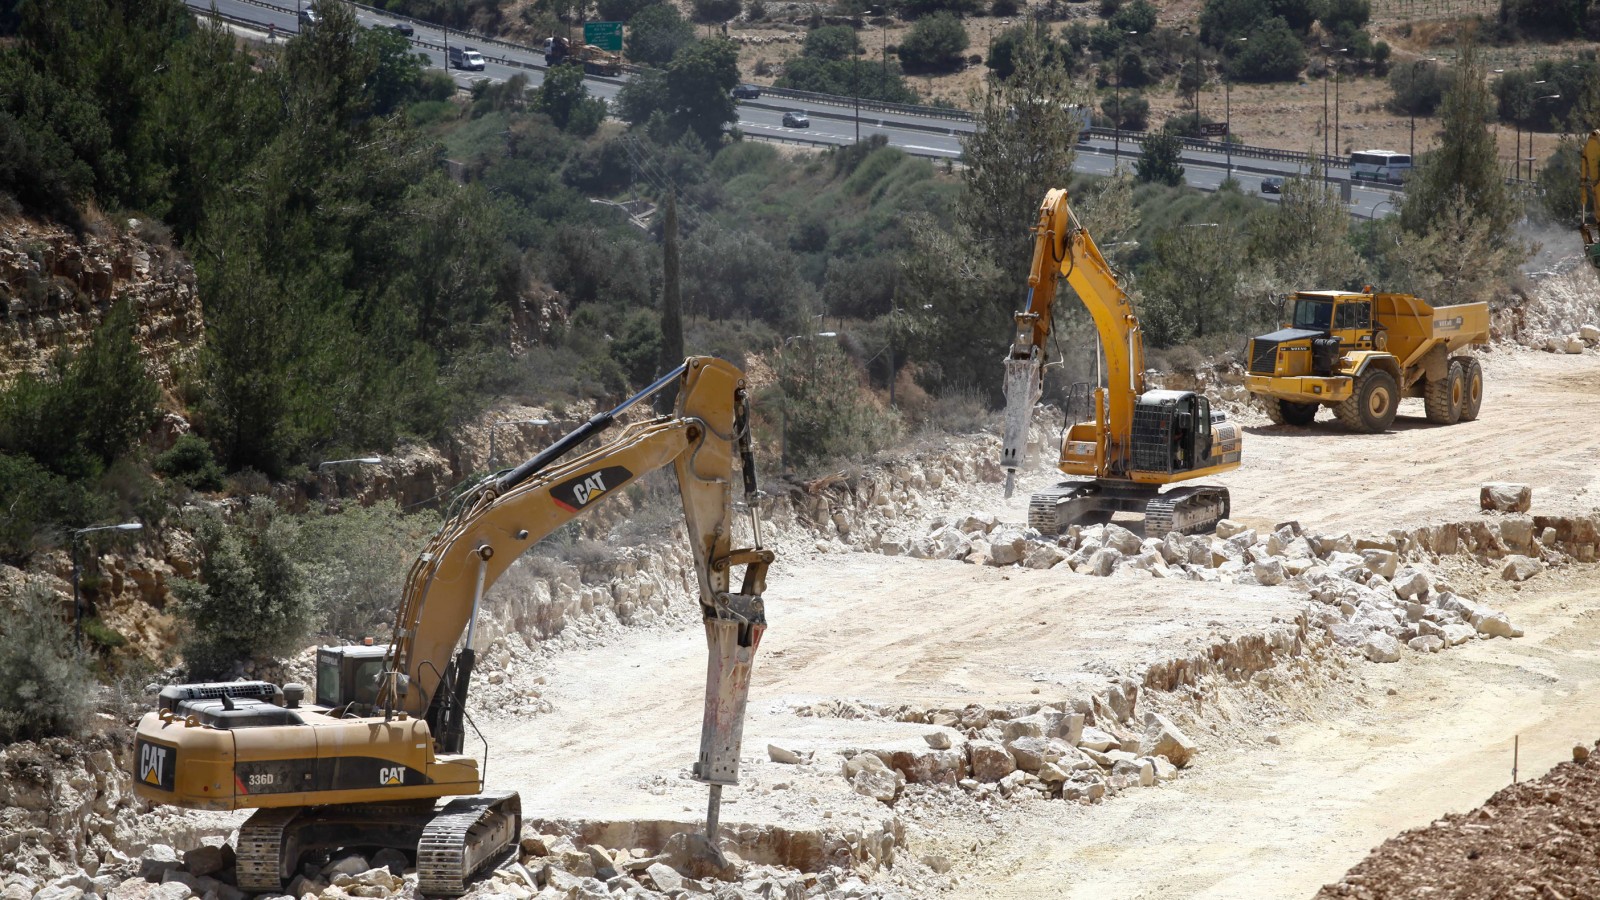 יש השקעות שניתנות למוניטיזציה. עבודות לסלילת כביש חדש מירושלים לתל אביב (צילום ארכיון: פלאש 90).